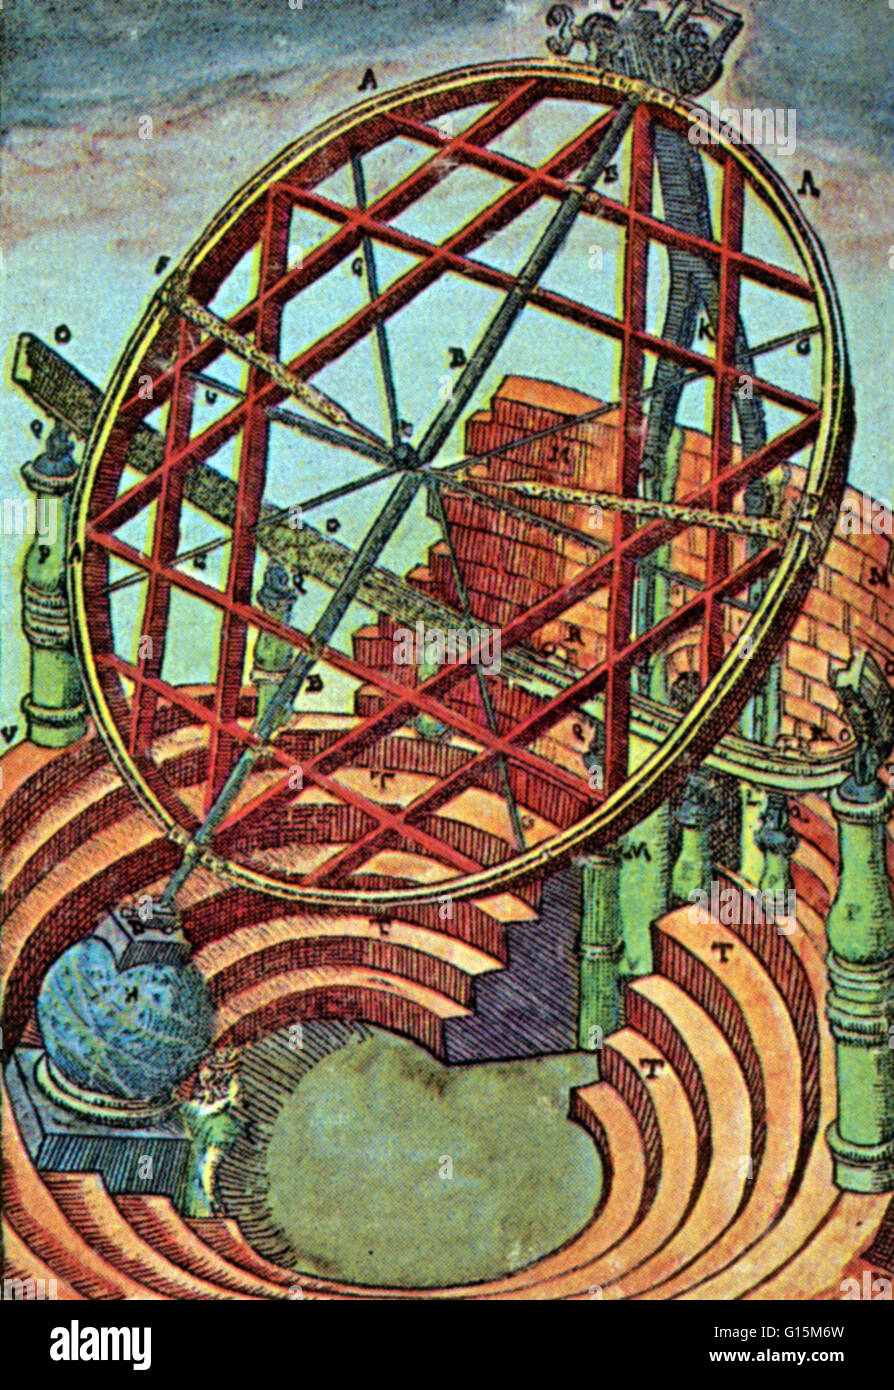 Armillary équatoriaux de Tycho Brahe, qui était d'environ 16 pieds de haut et avait son propre boîtier dans l'observatoire de Brahe. Tycho Brahe (1546-1601) était un astronome danois. Après s'intéresser à l'astronomie en tant qu'étudiant à Copenhague, Tycho Brahé a réalisé le Banque D'Images